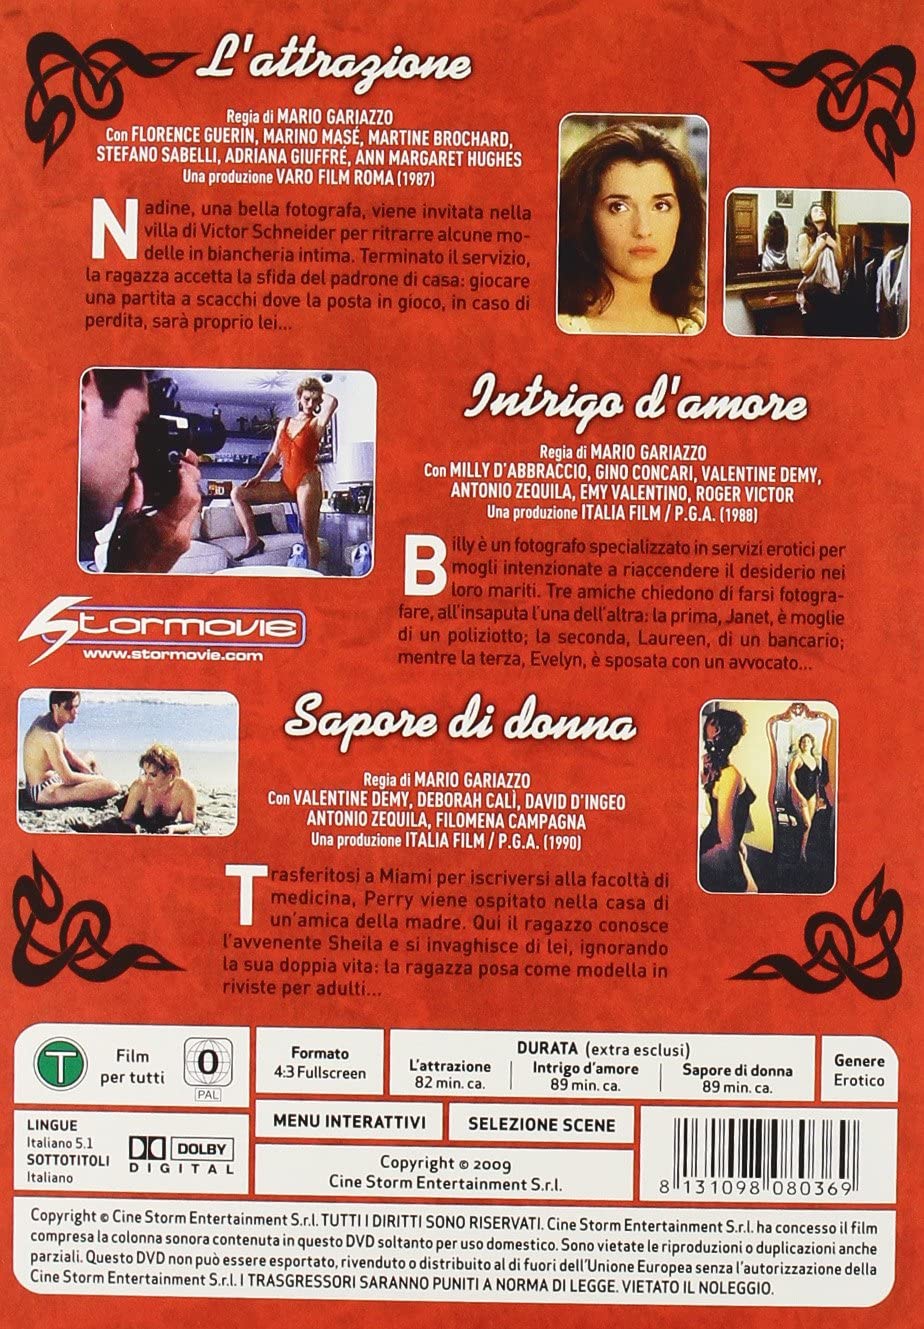 Intrigo d'amore (1988) Screenshot 4 